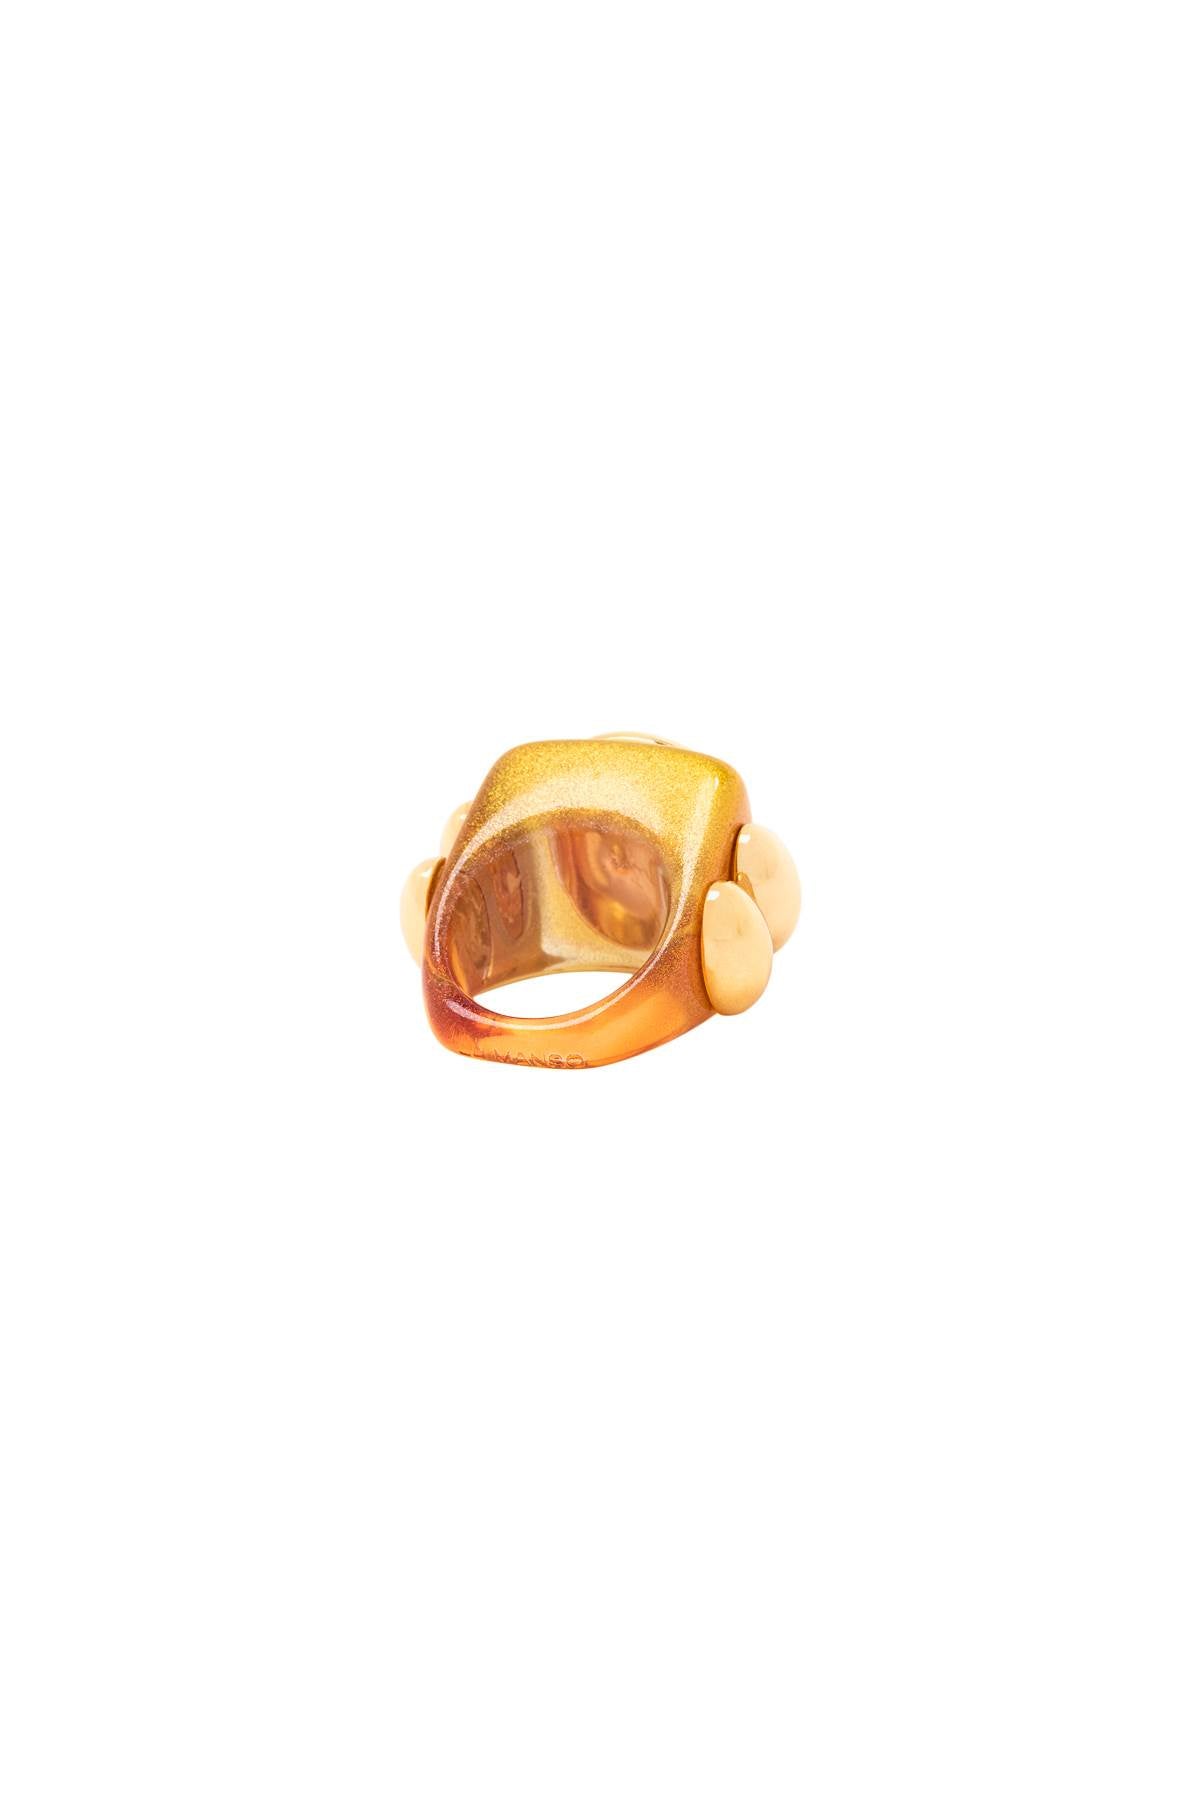 La manso 'oro puroi' ring-1